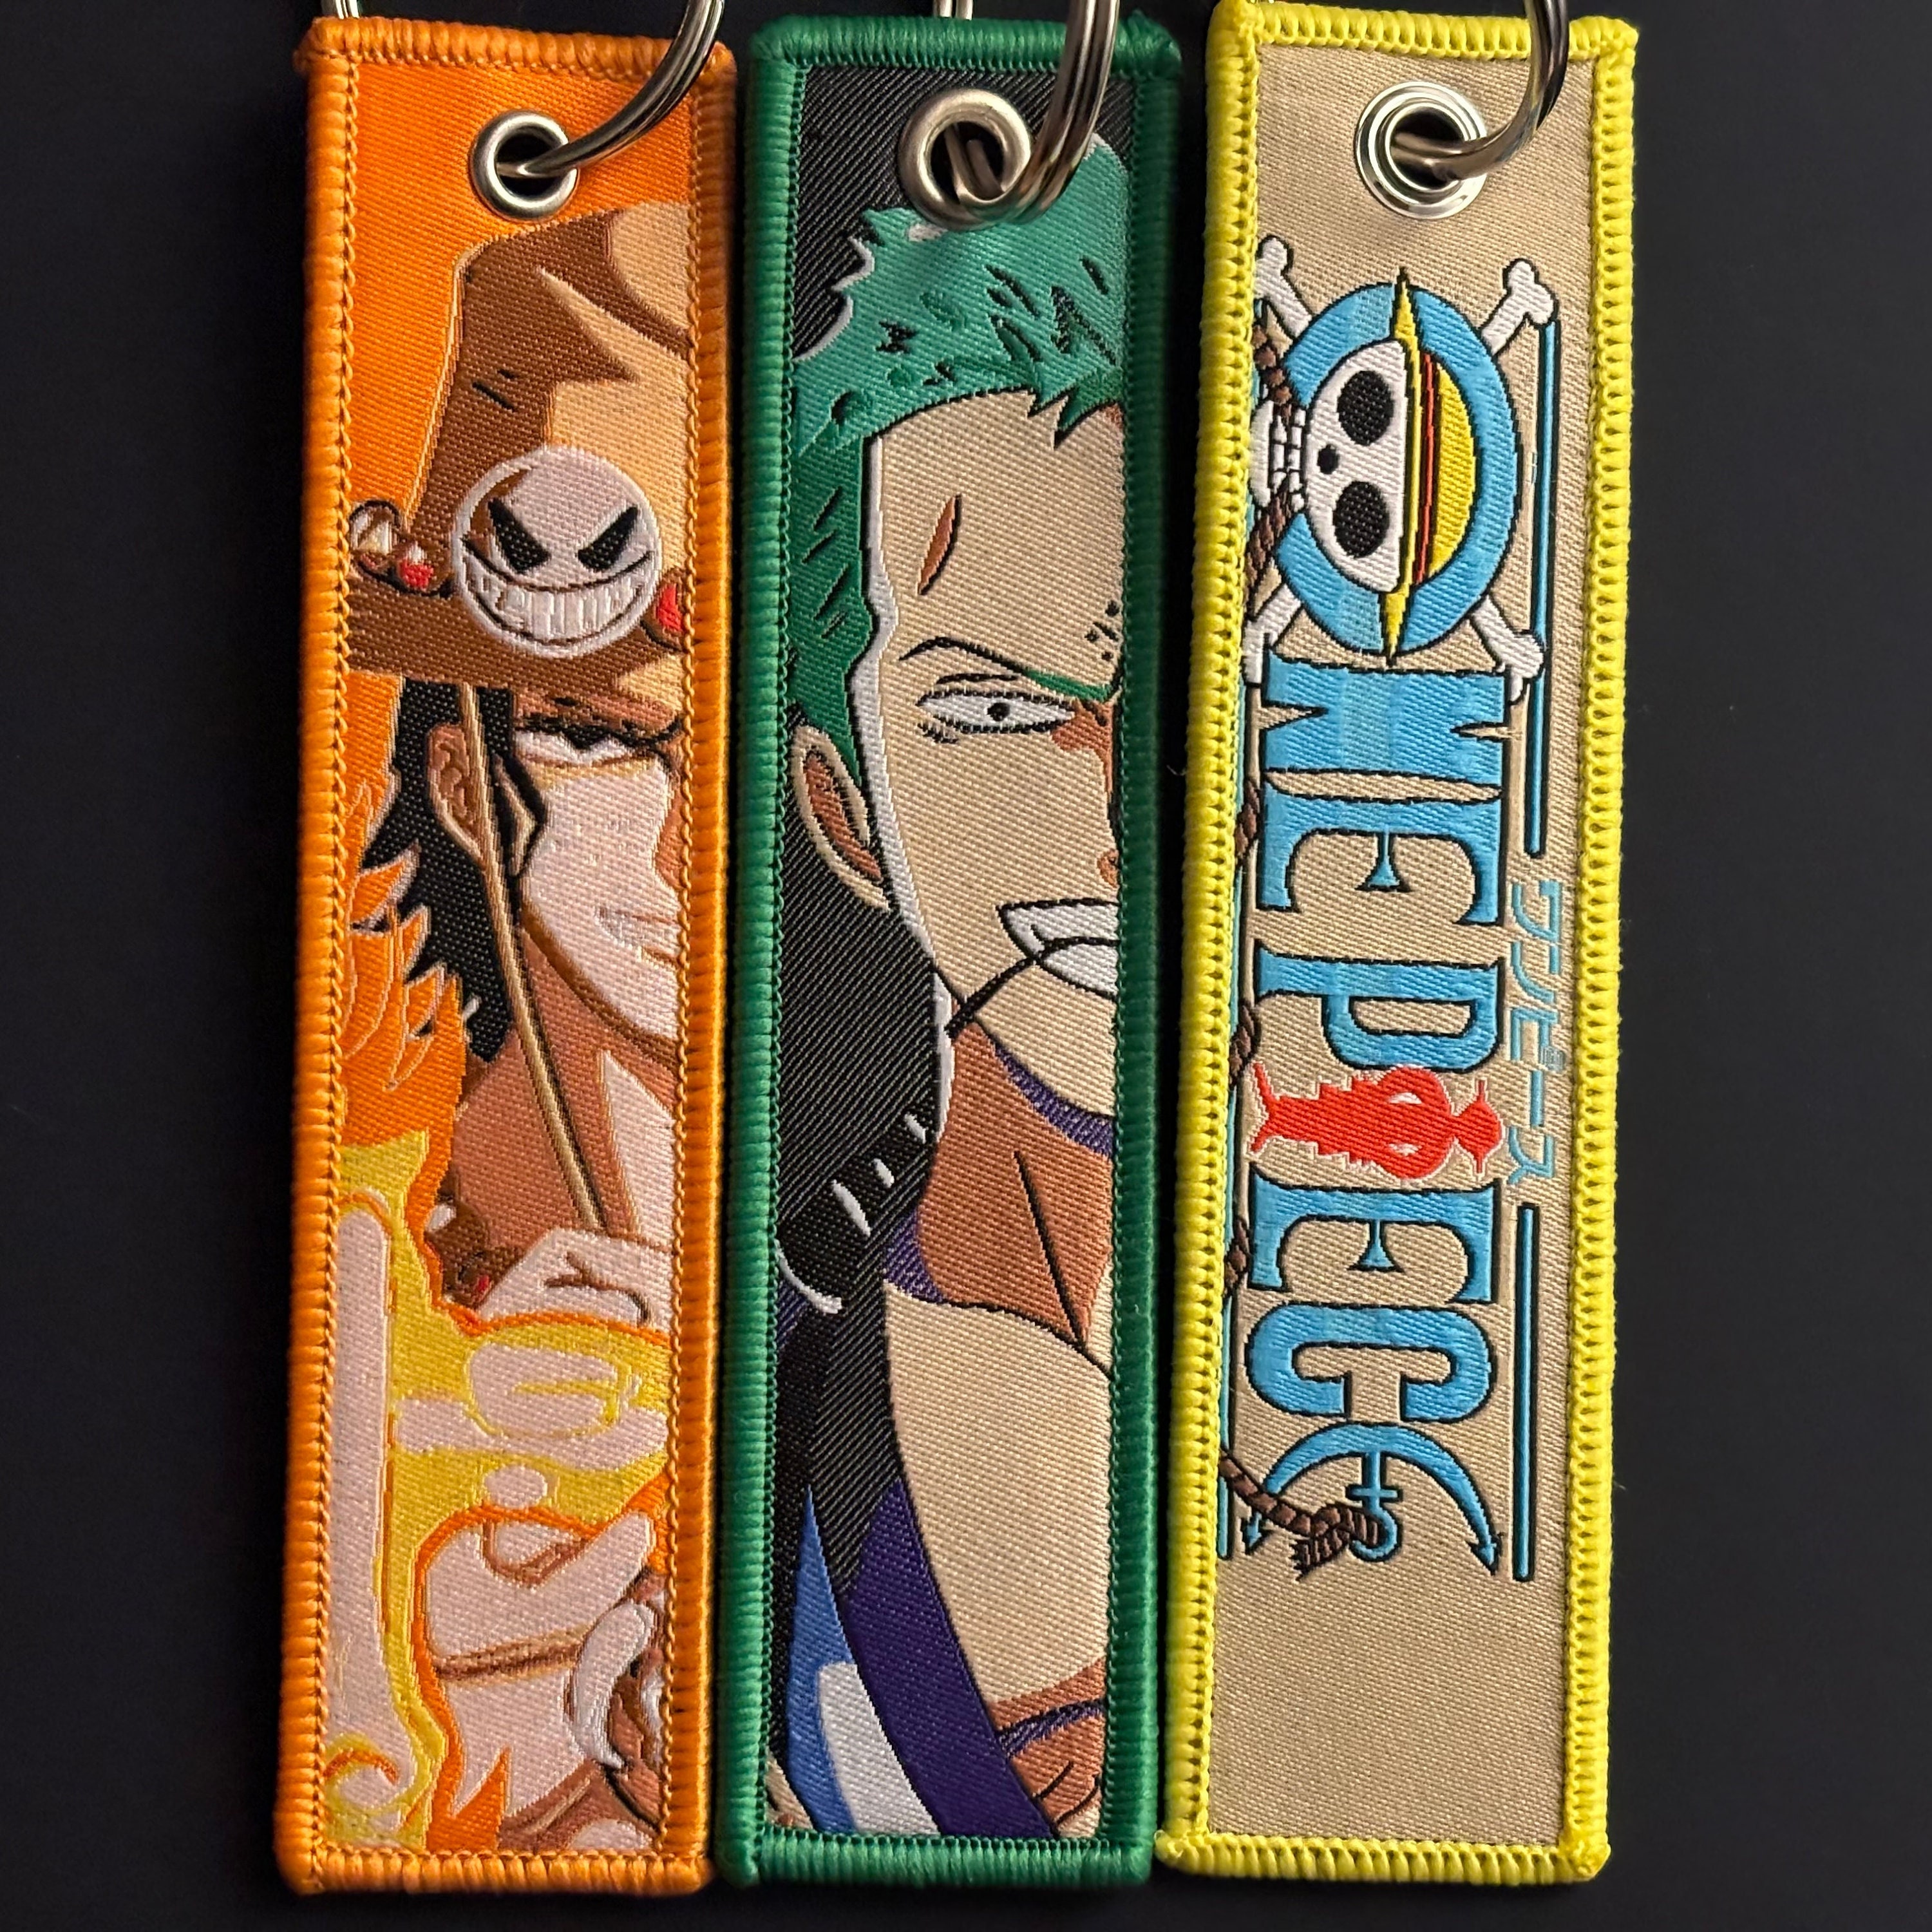 One Piece Inspired Zoro Pin